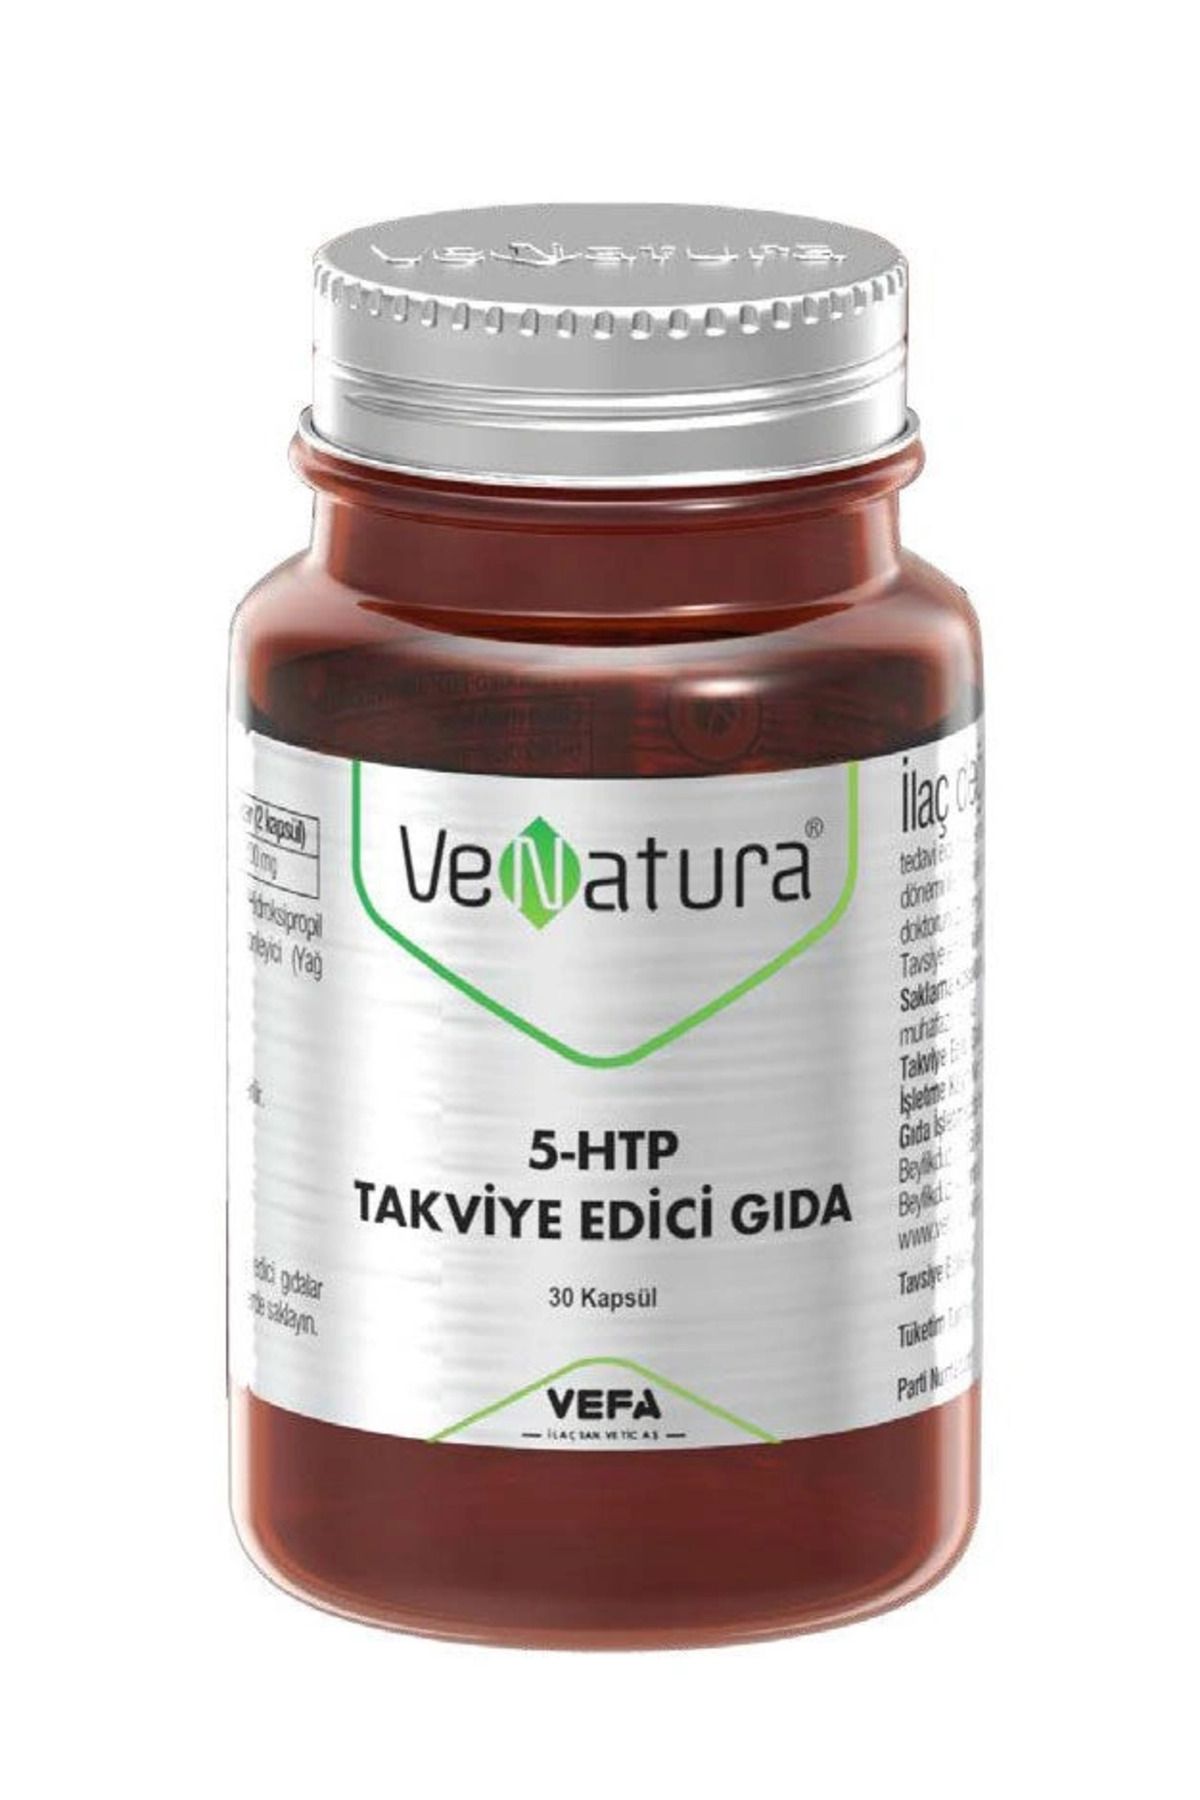 Venatura 5-HTP Takviye Edici Gıda 30 Kapsül-Diş Beyazlatıcı Köpük Hediye